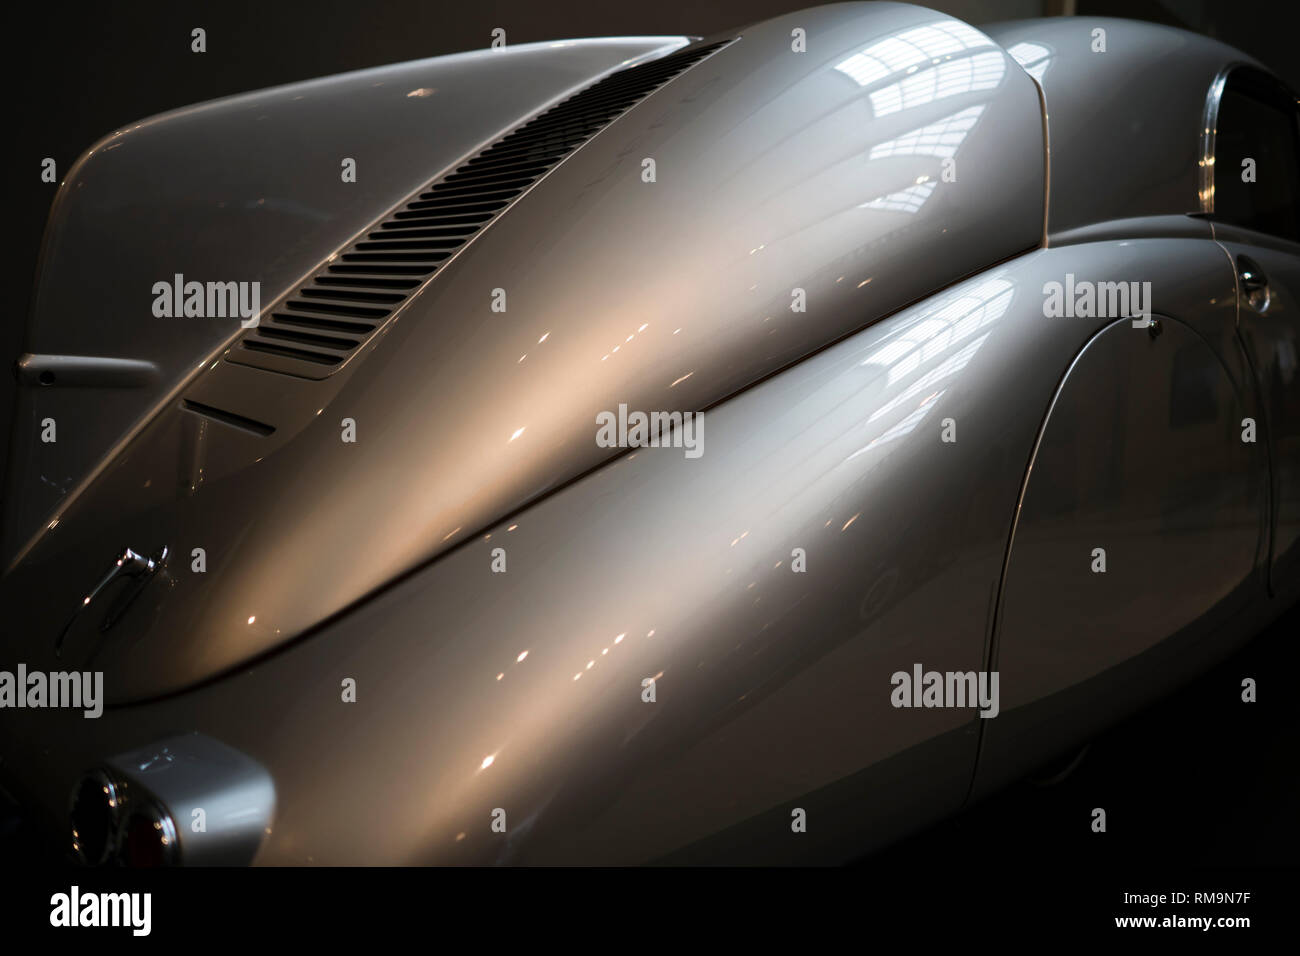 Car shape Banque d'images détourées - Alamy